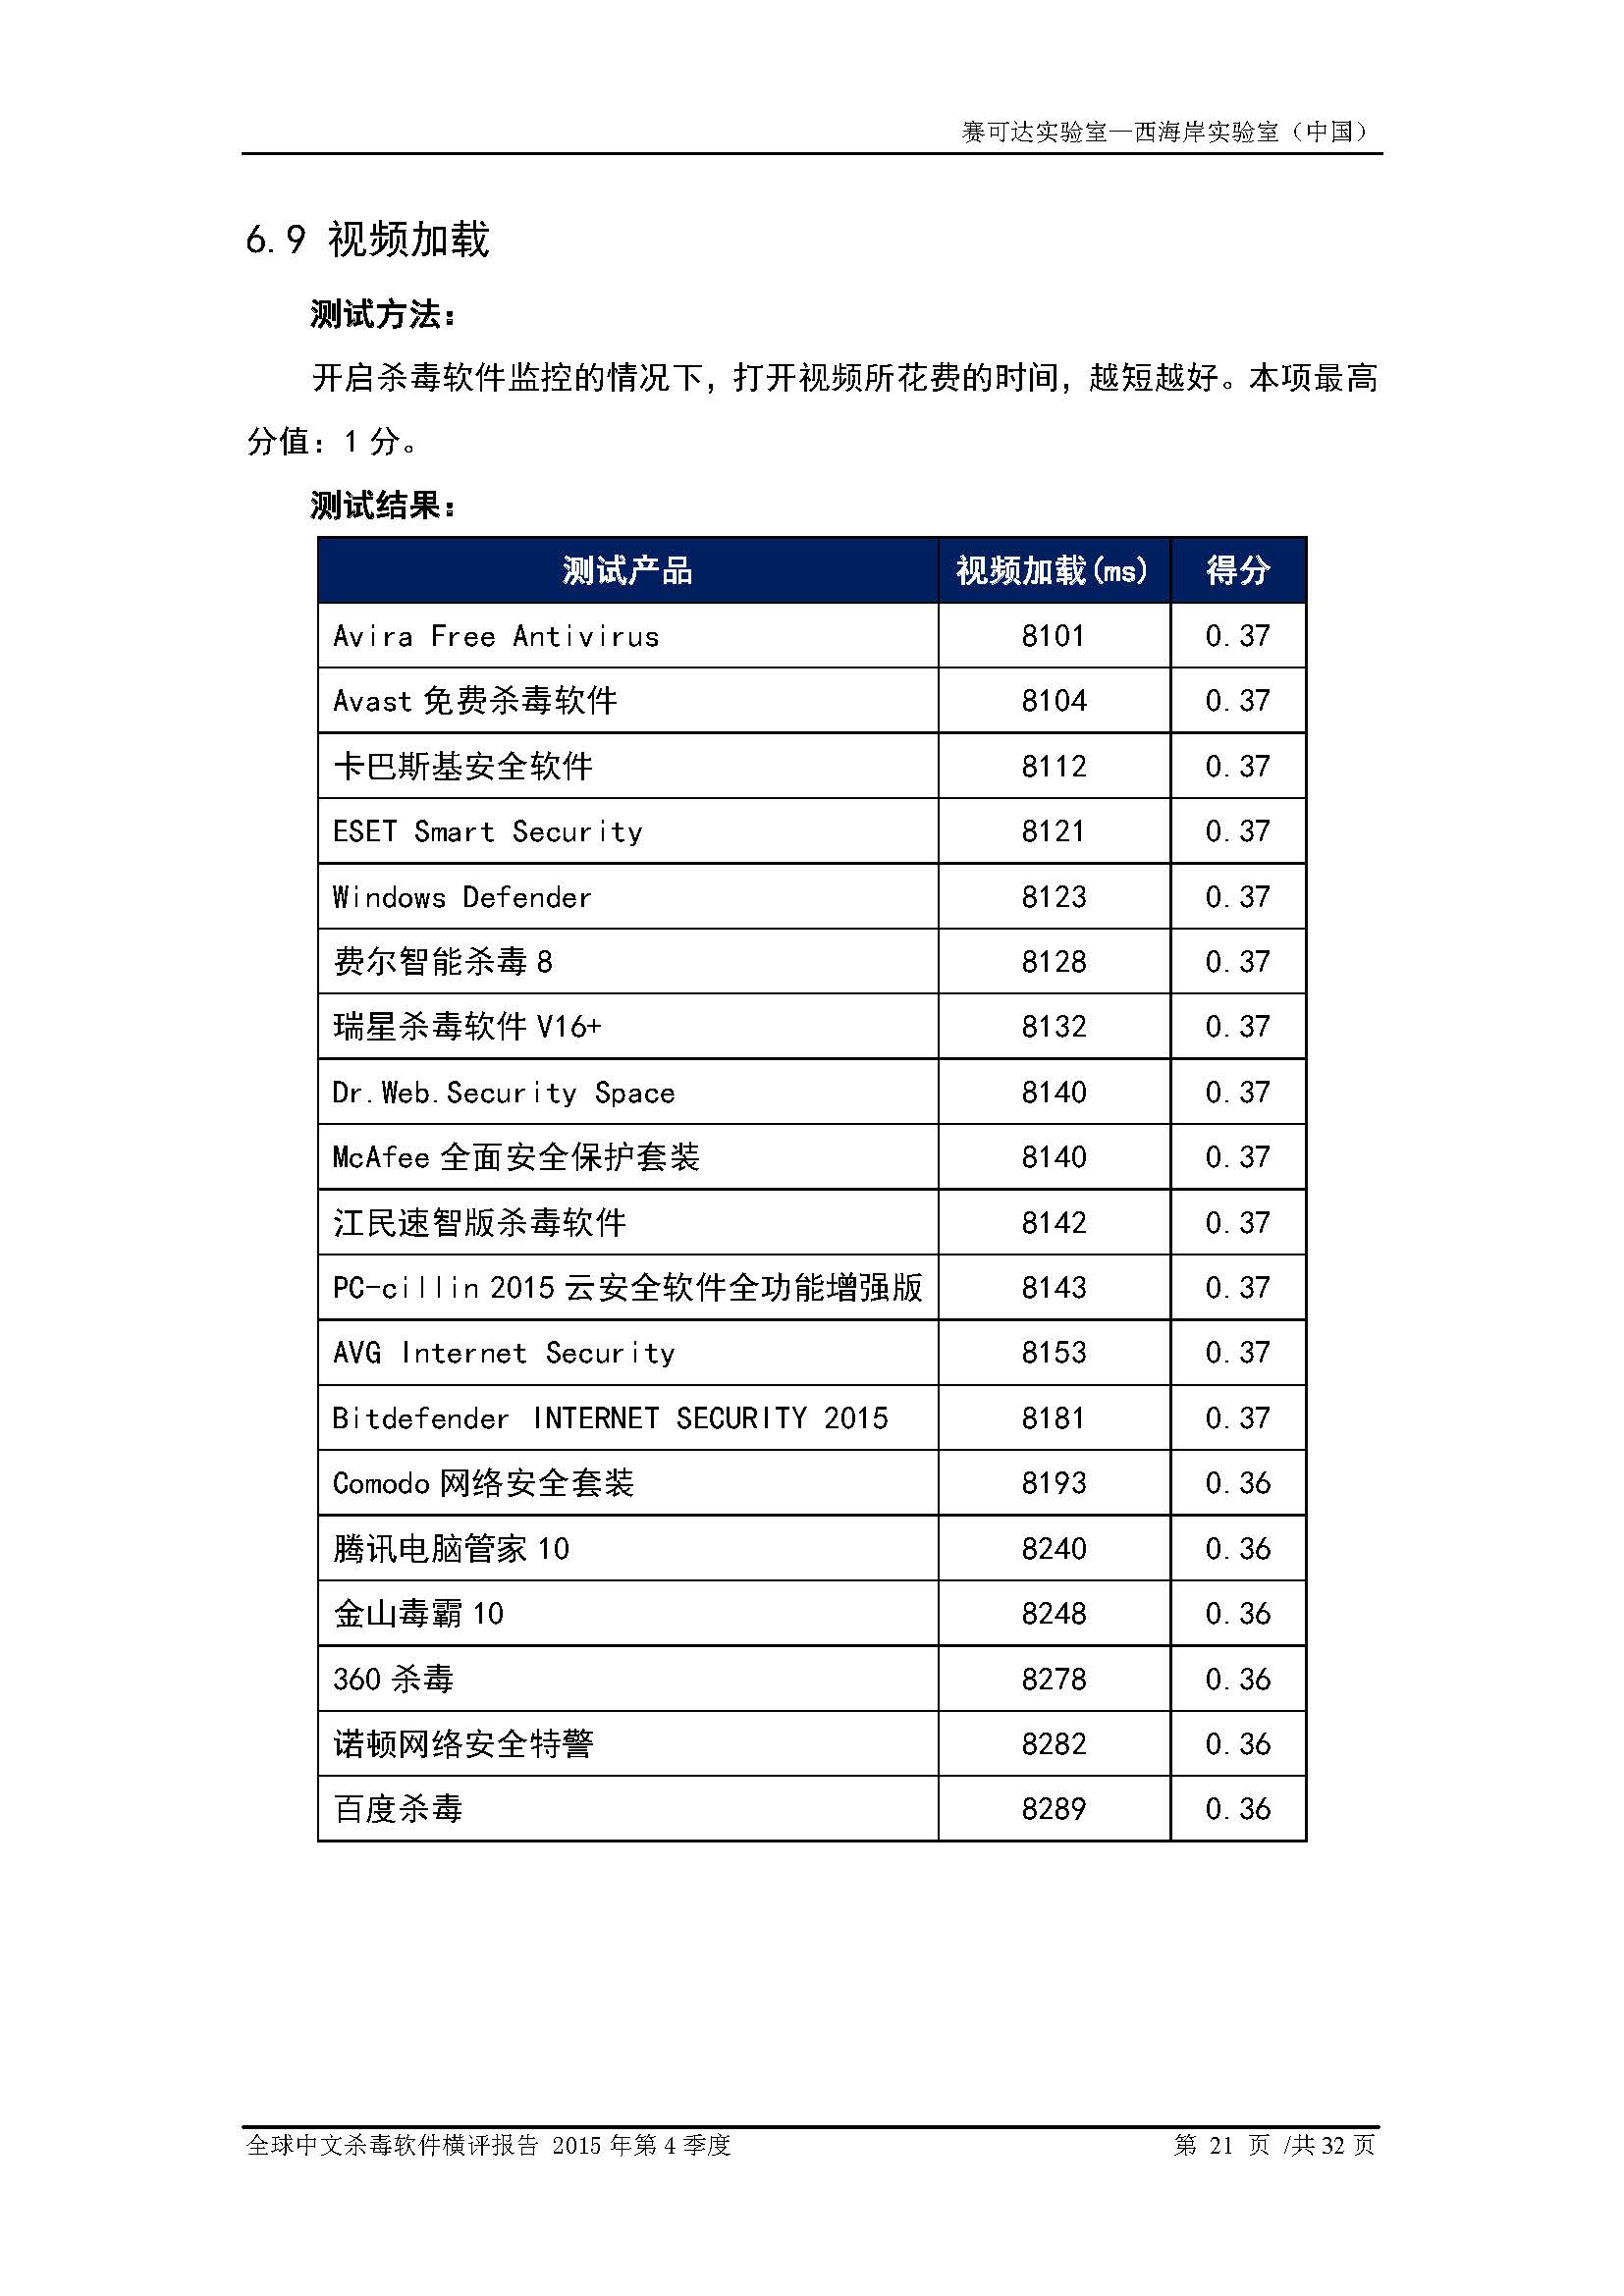 中文PC杀毒软件横评测试报告- Windows 8.1【中文版】.pdf (_Page_23.jpg